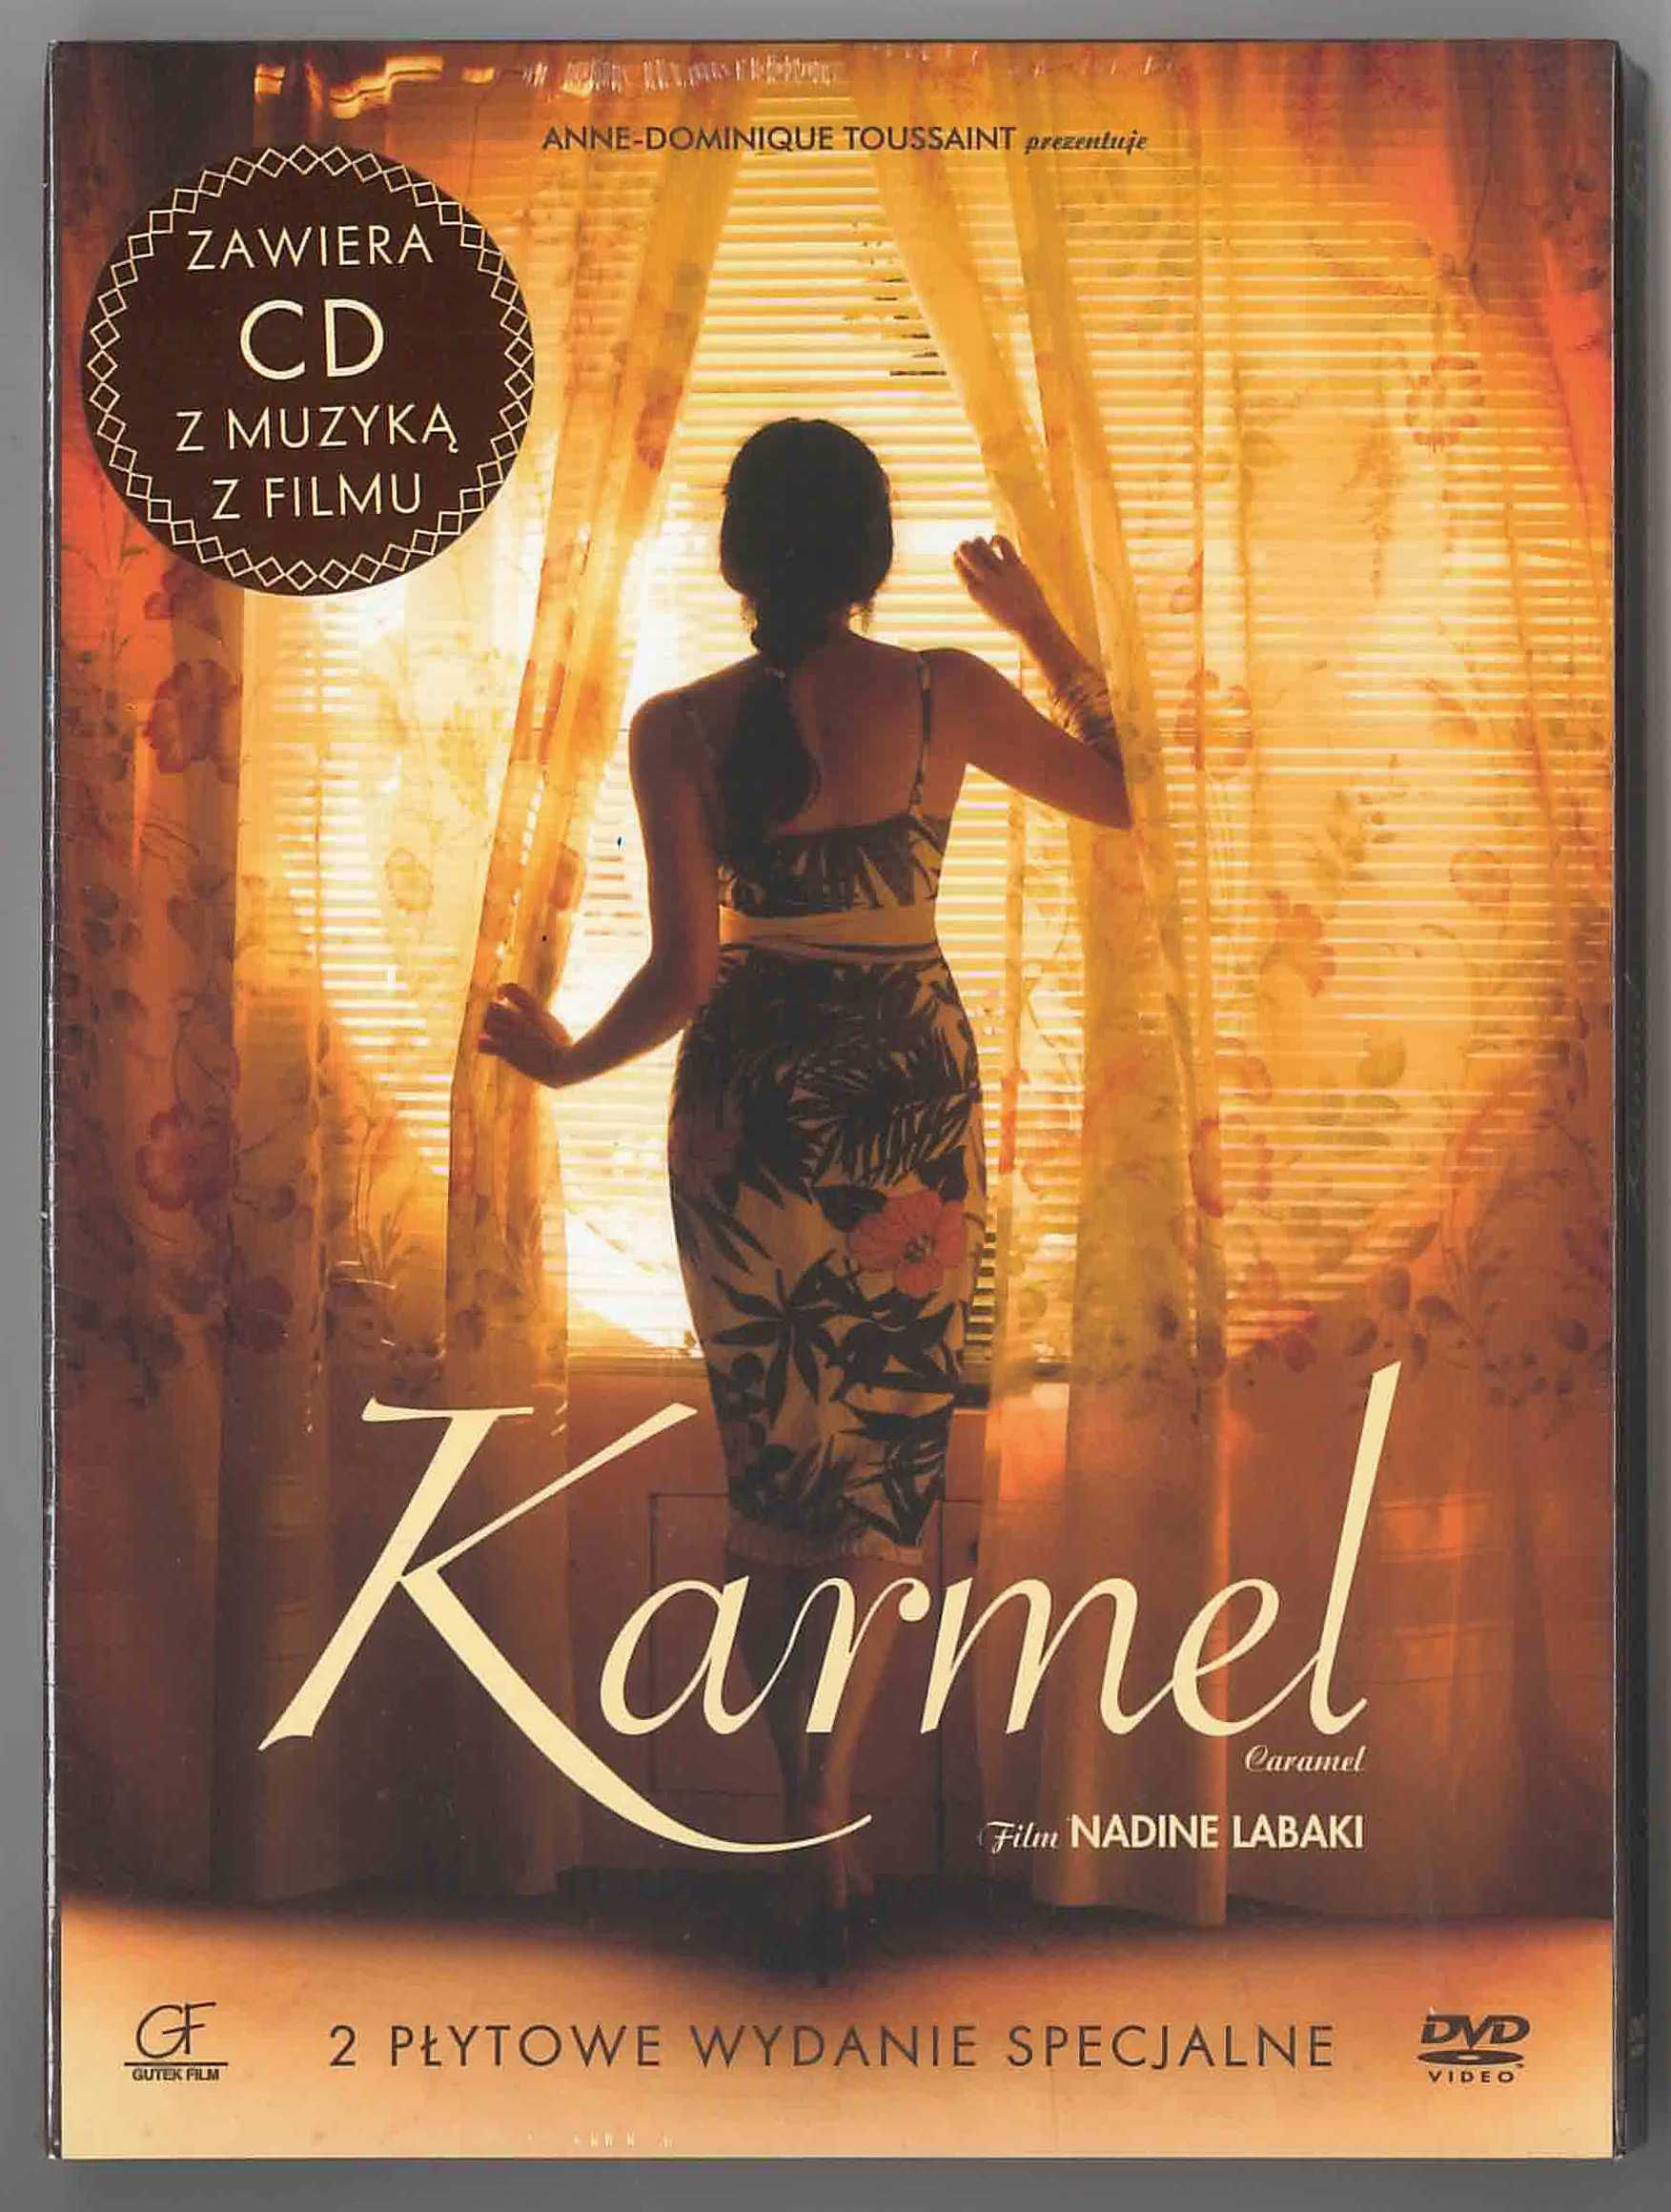 Karmel film DVD + CD soundtrack, reż. Nadine Labaki, 2007